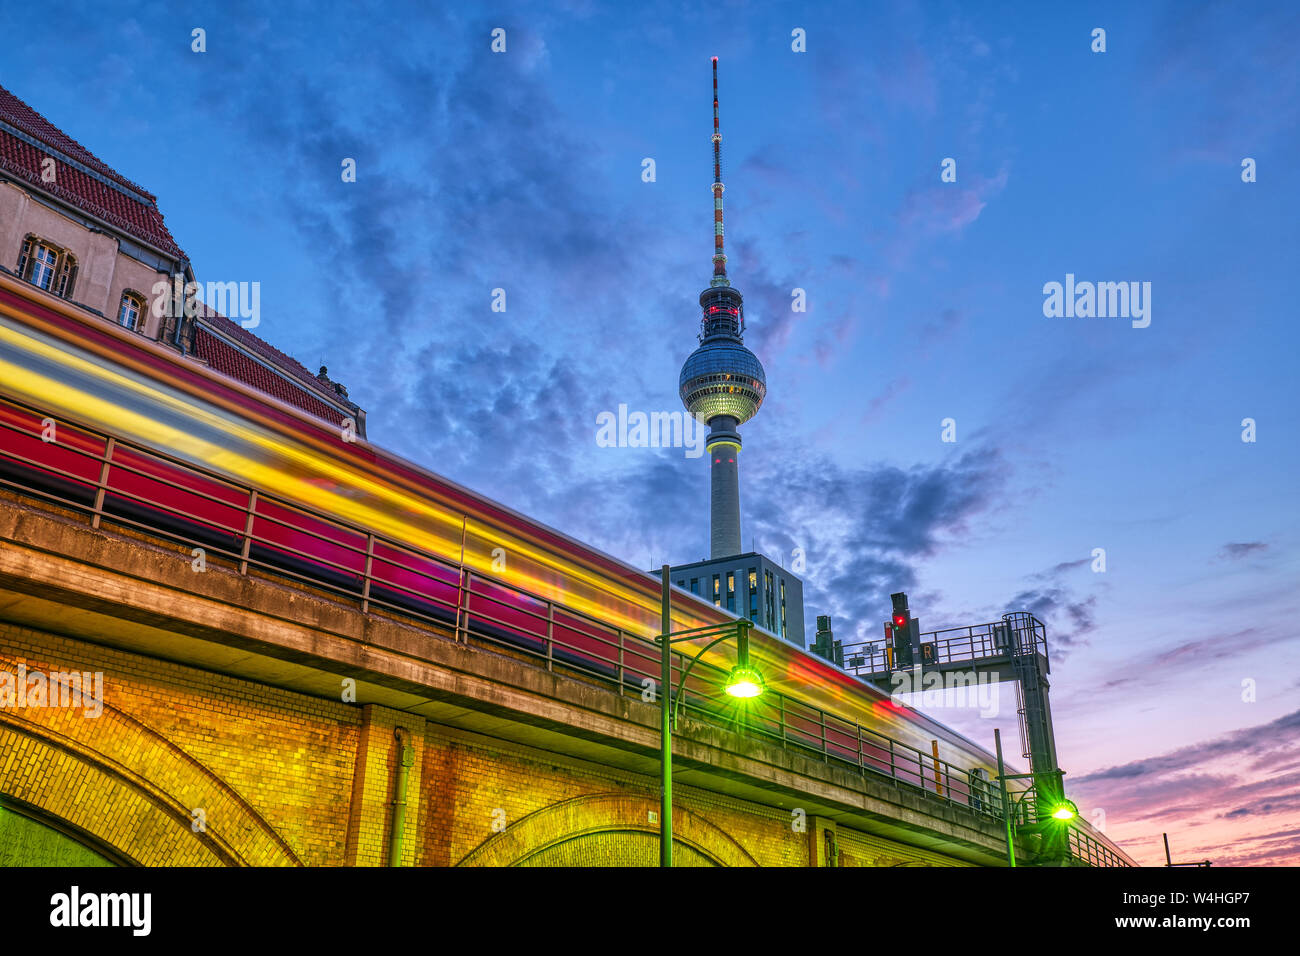 El tren local con el desenfoque de movimiento y la famosa Torre de Televisión de Berlín en la noche Foto de stock